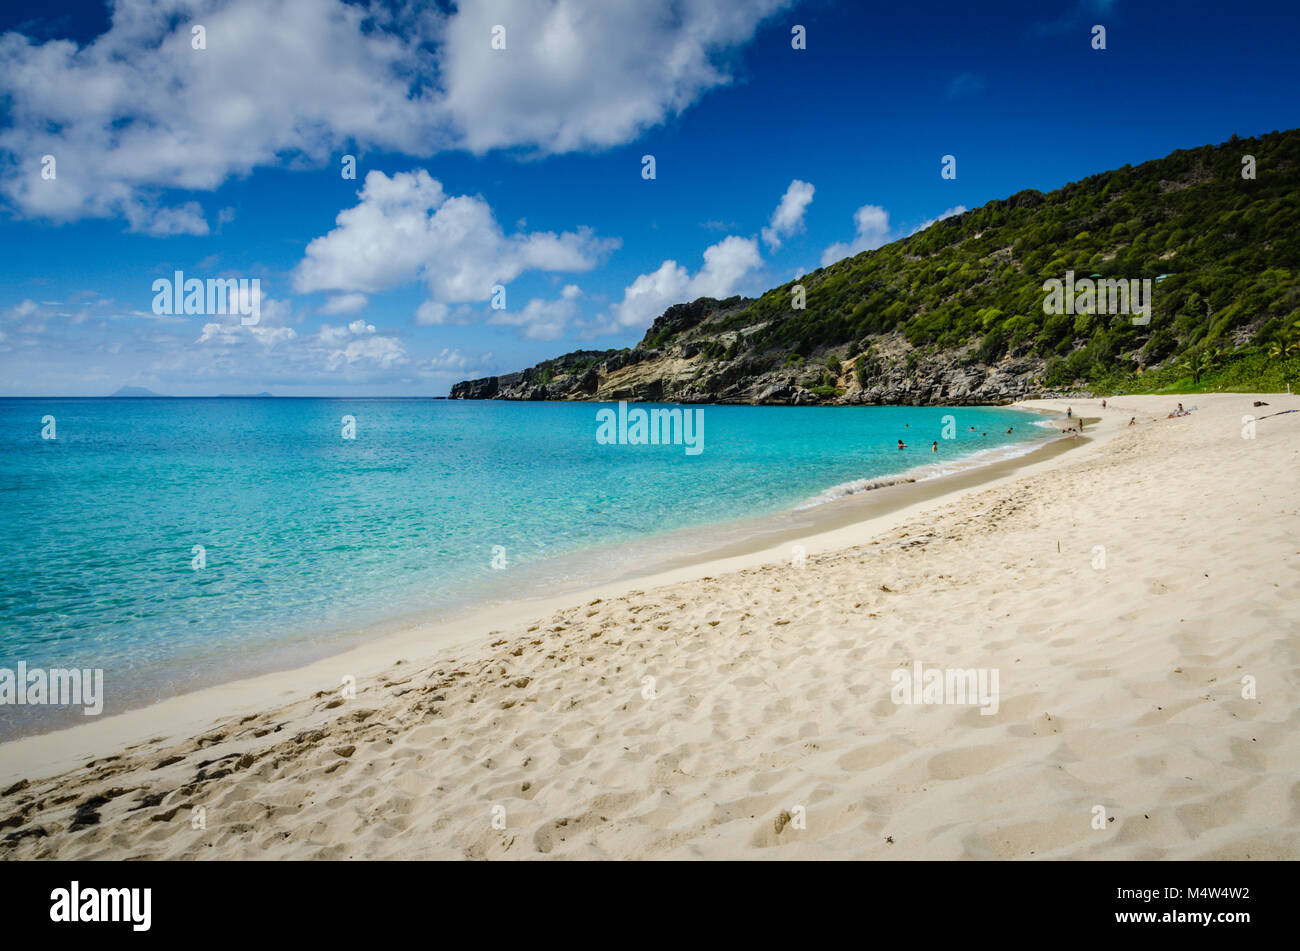 La playa de Gouverneur privado y remoto en el francés de la isla Caribeña de Saint Barthélemy (St Barts). Foto de stock